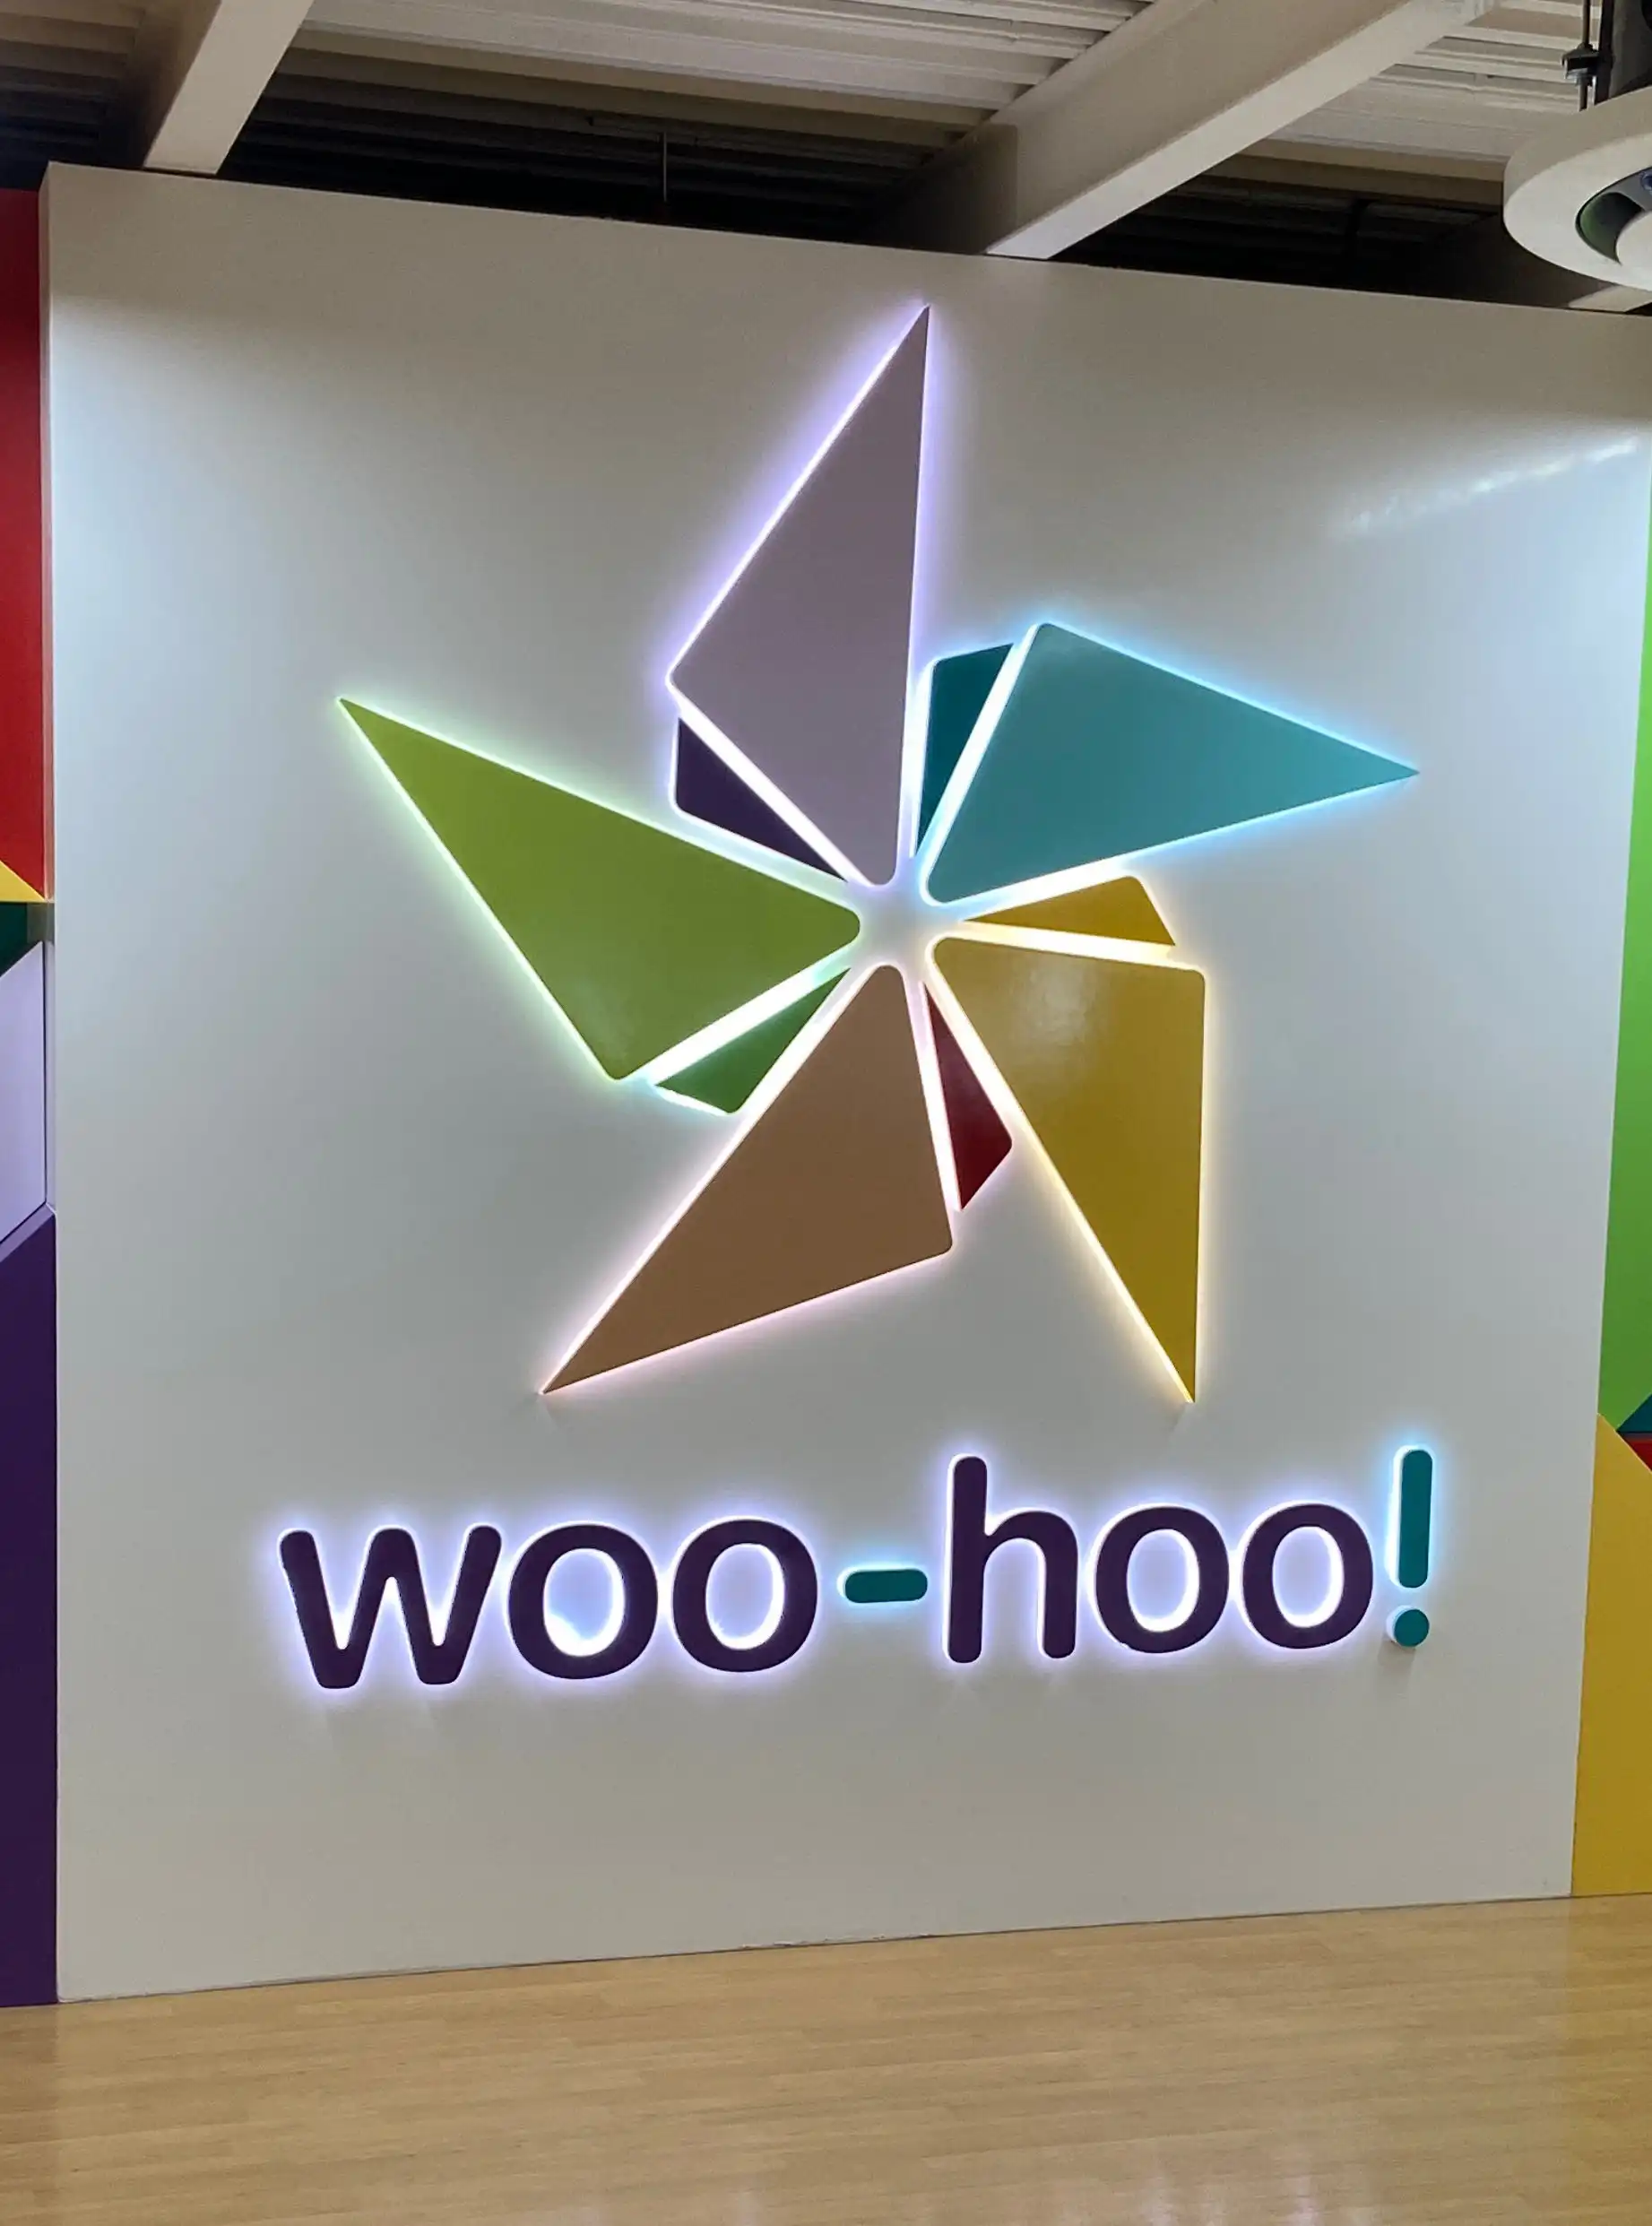 woo-hoo! Children's Museum